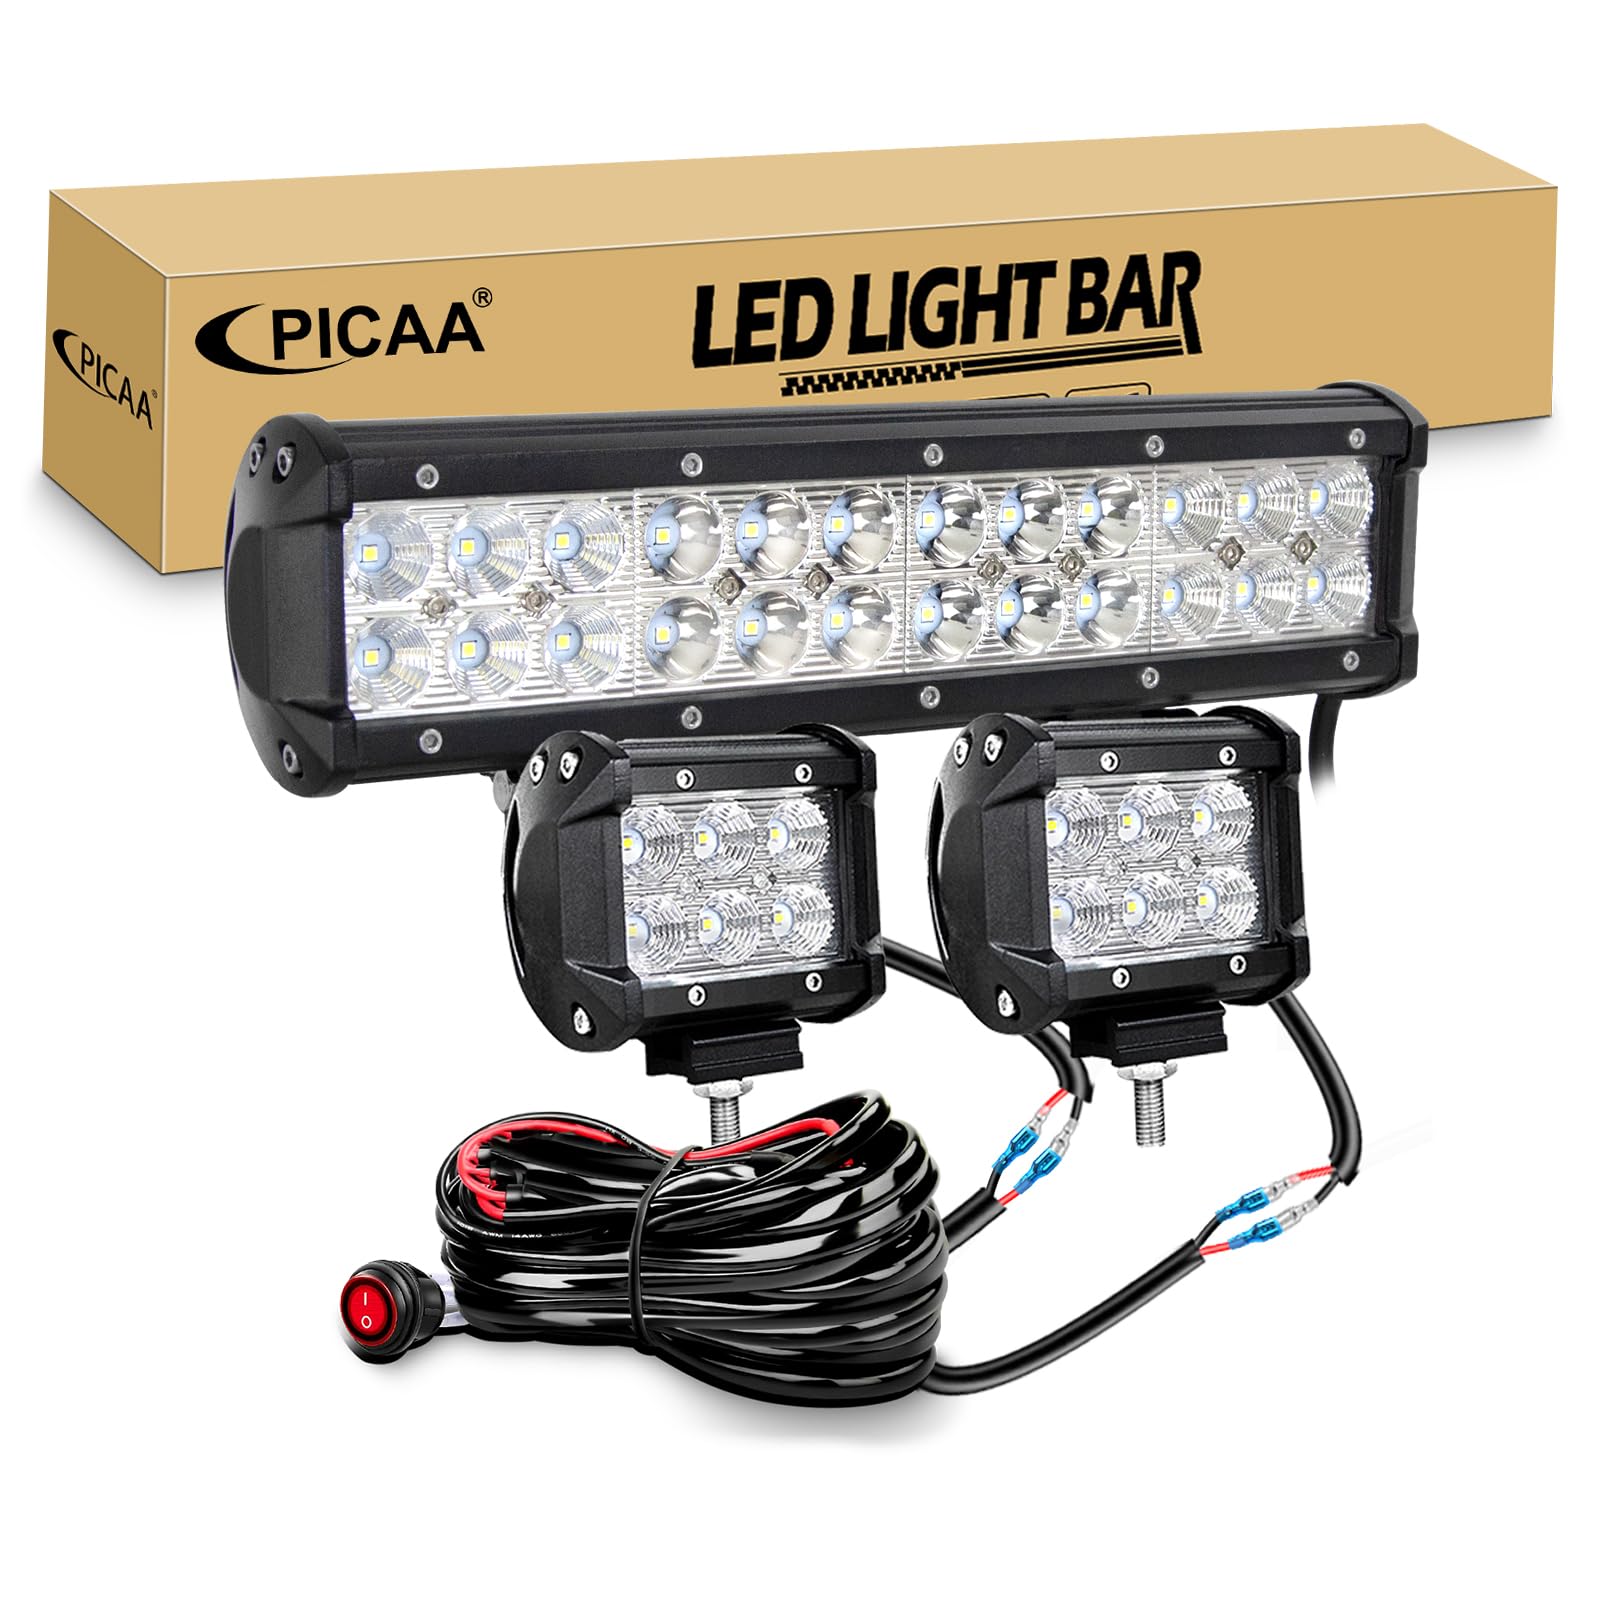 PICAA 12 Zoll 72W LED Lightbar+2x 4 18W LED Arbeitsscheinwerfer+Kabelbaum Kit, Tri-Reihen Led Lichtbalken 12V 24V Auto Offroad 4x4 Zusatzscheinwerfer Flutlicht Spotlight von PICAA